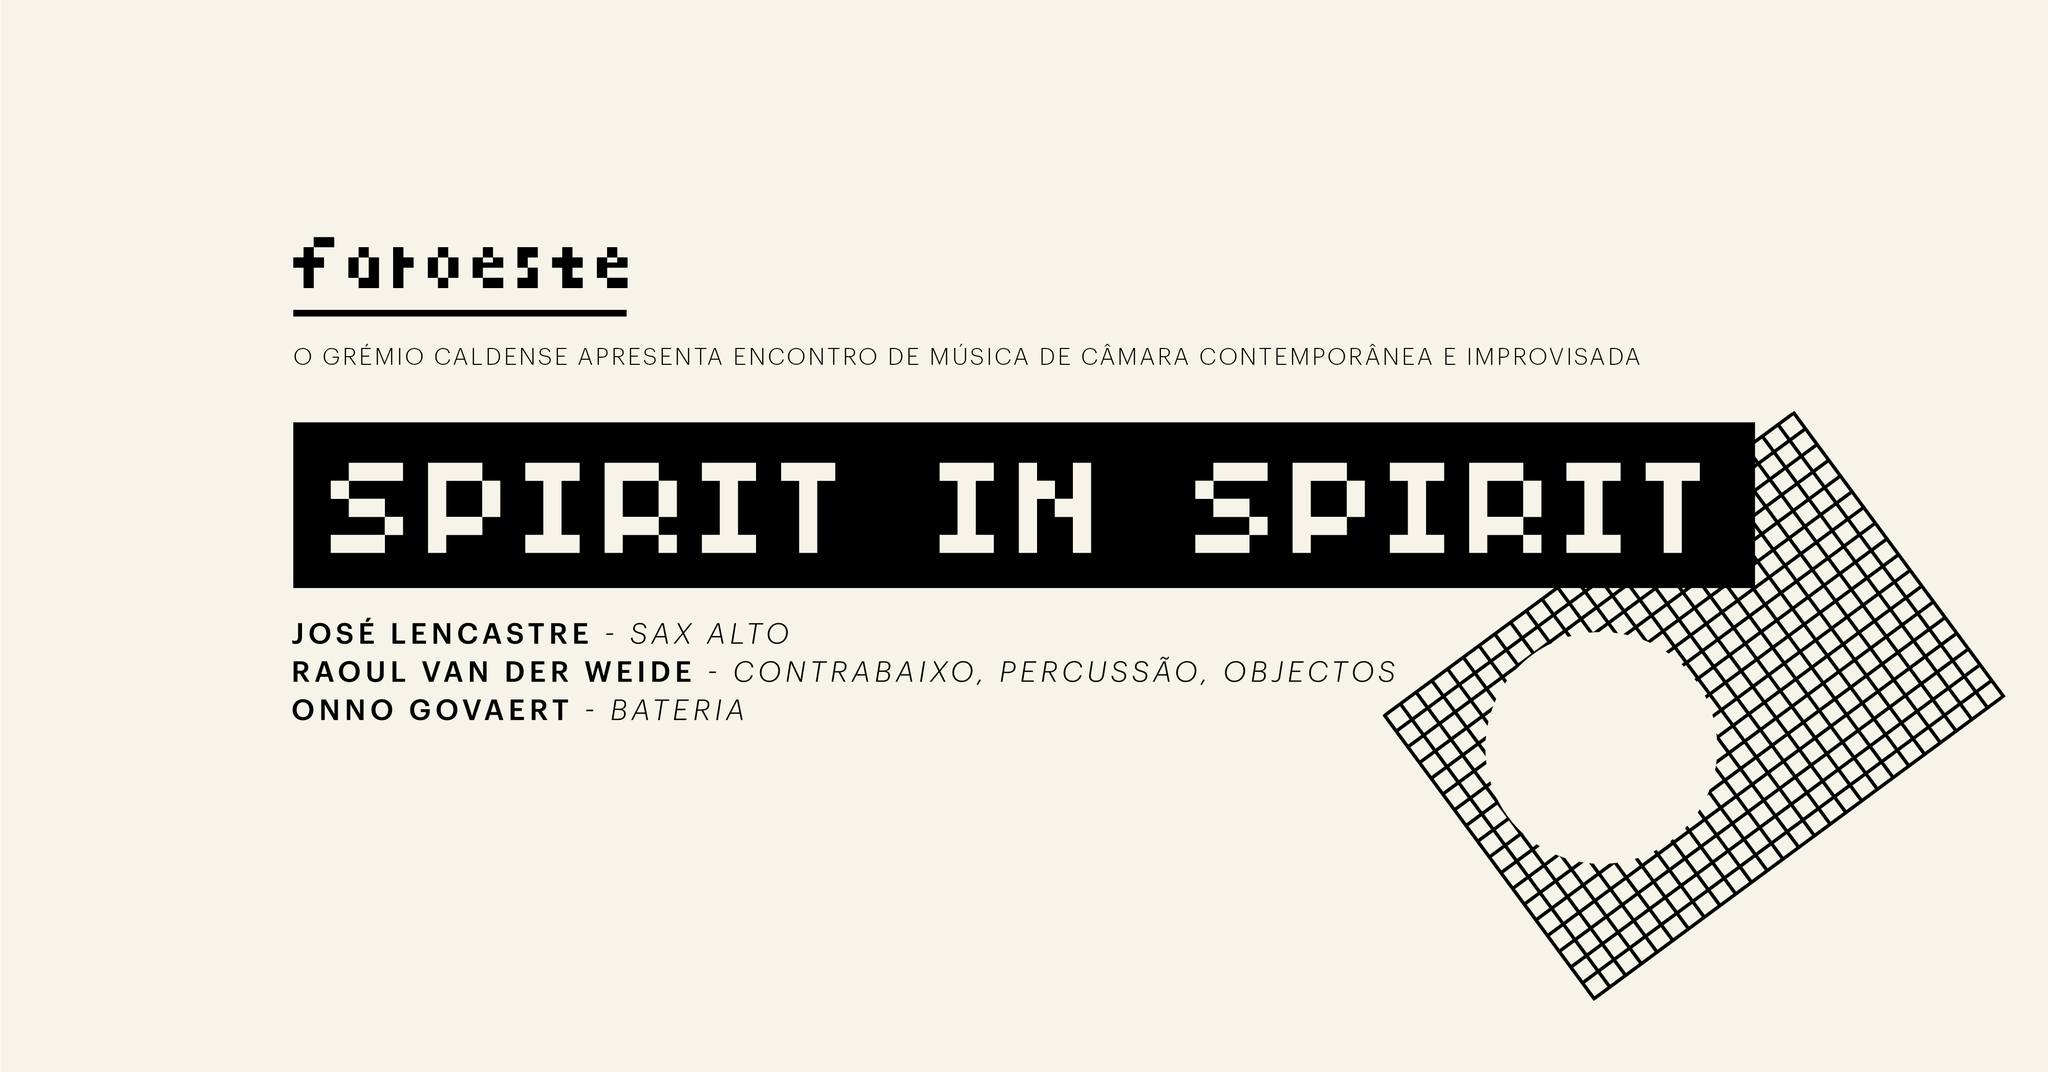 FAROESTE-EMCCI: Spirit in Spirit